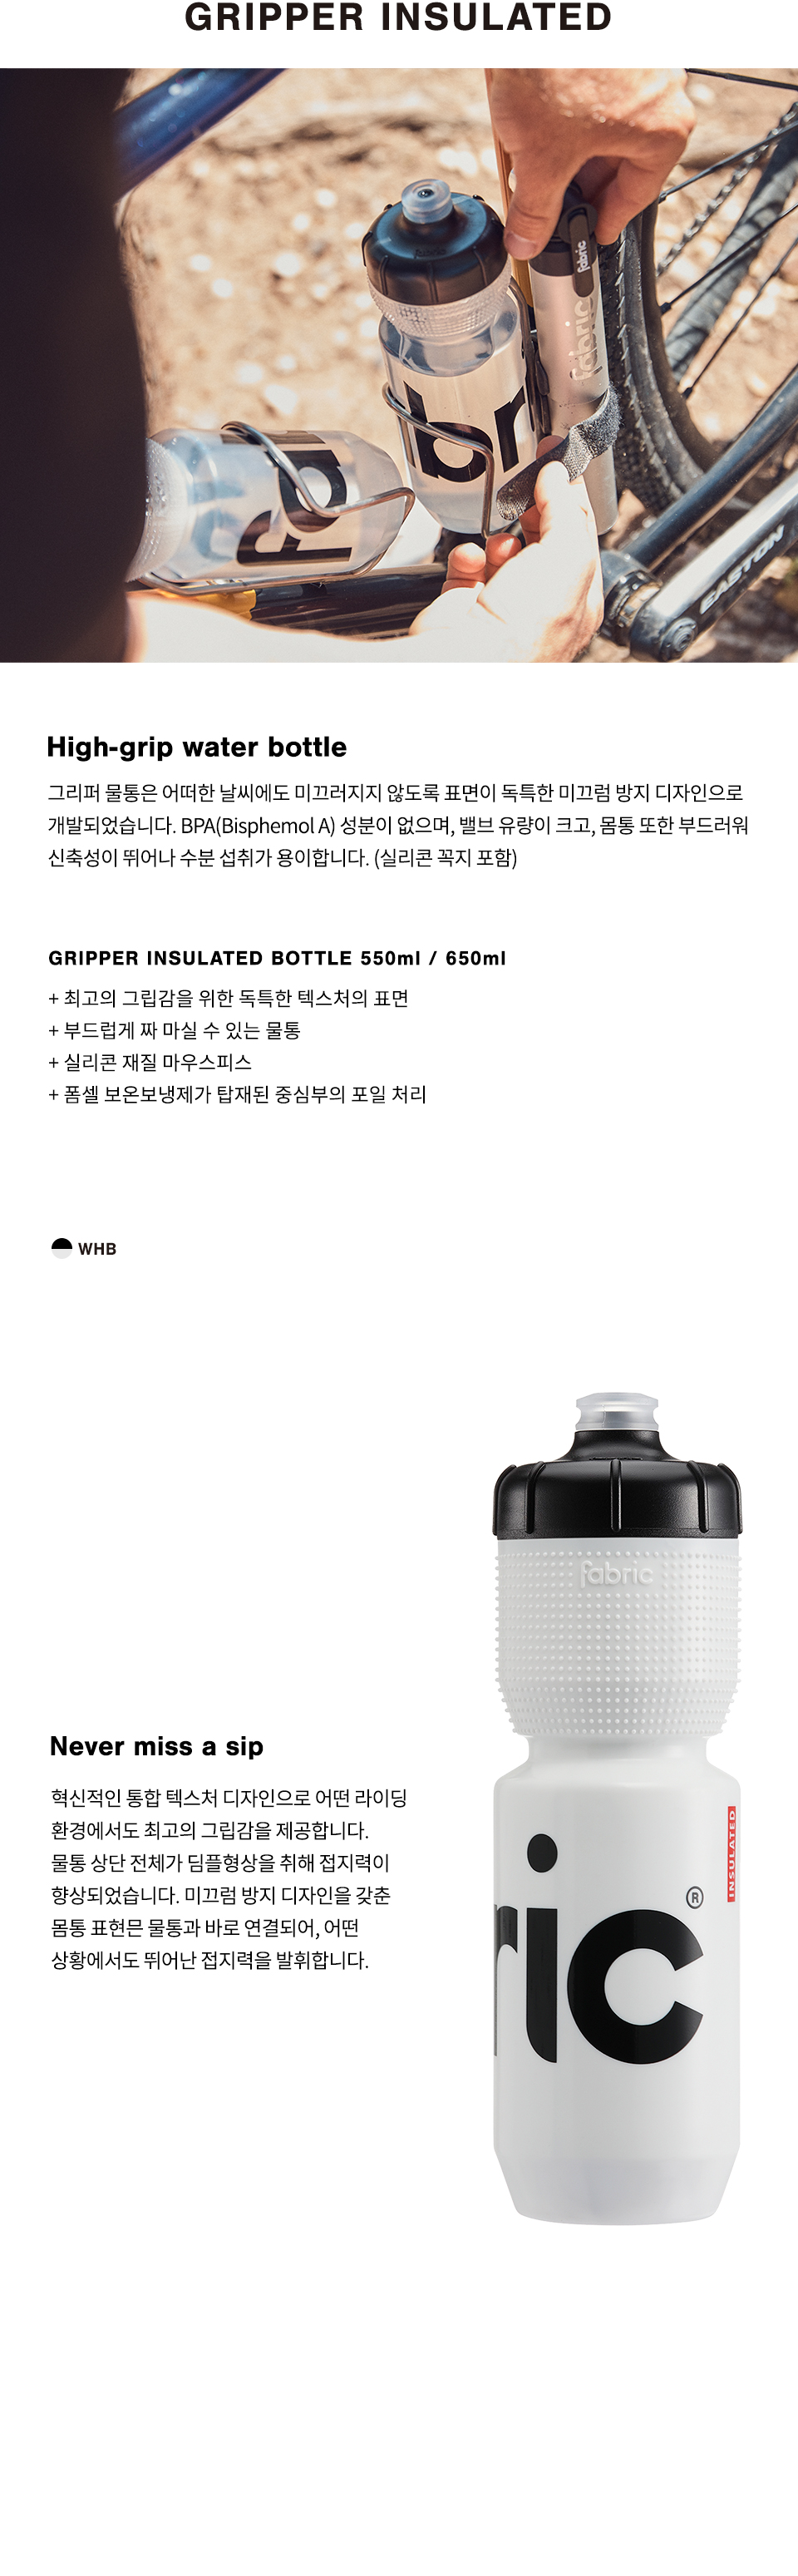 Gripper-Insulated-Bottle-WHB_550ml,-650ml_02_134126.jpg